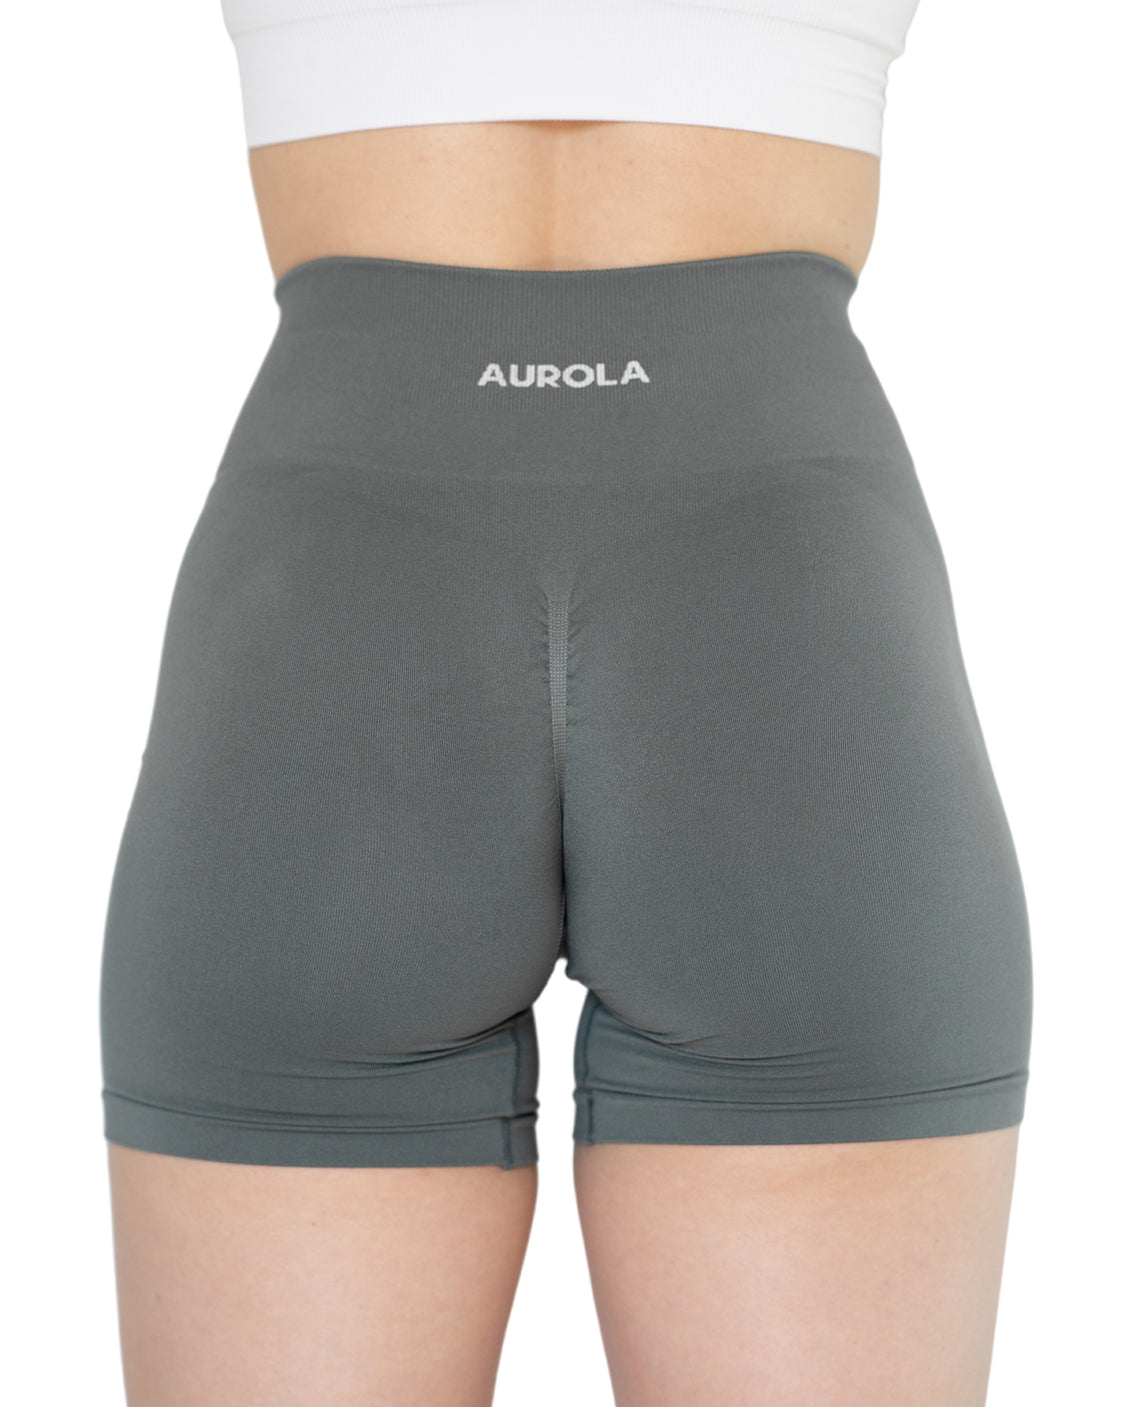 AUROLA Intensify V2.0 Short Women's Workout Shorts Seamless